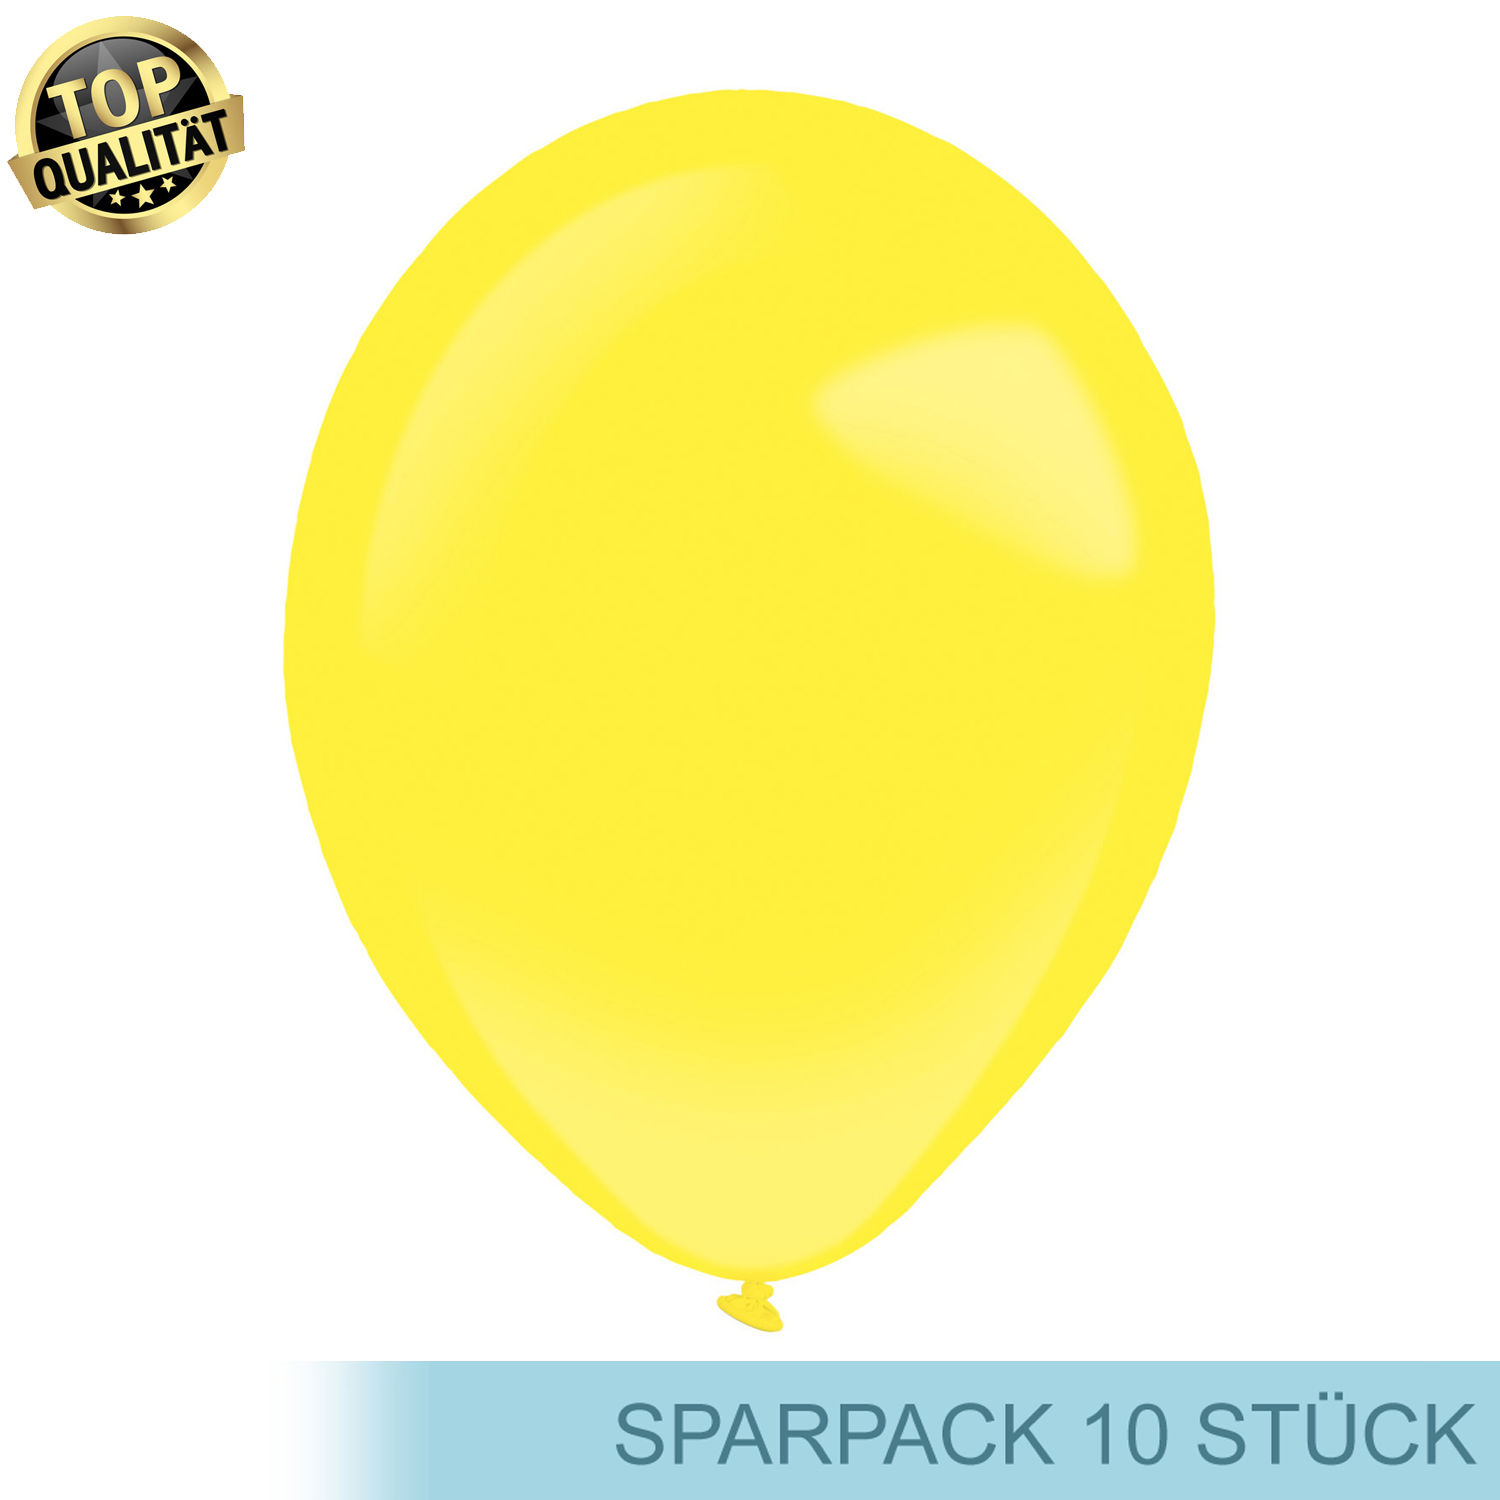 Premium Latex-Luftballon, rund, 10 Stück, ca. 12cm Durchmesser, Sonnengelb / Yellow Sunshine - Ideal für viele Dekorationen